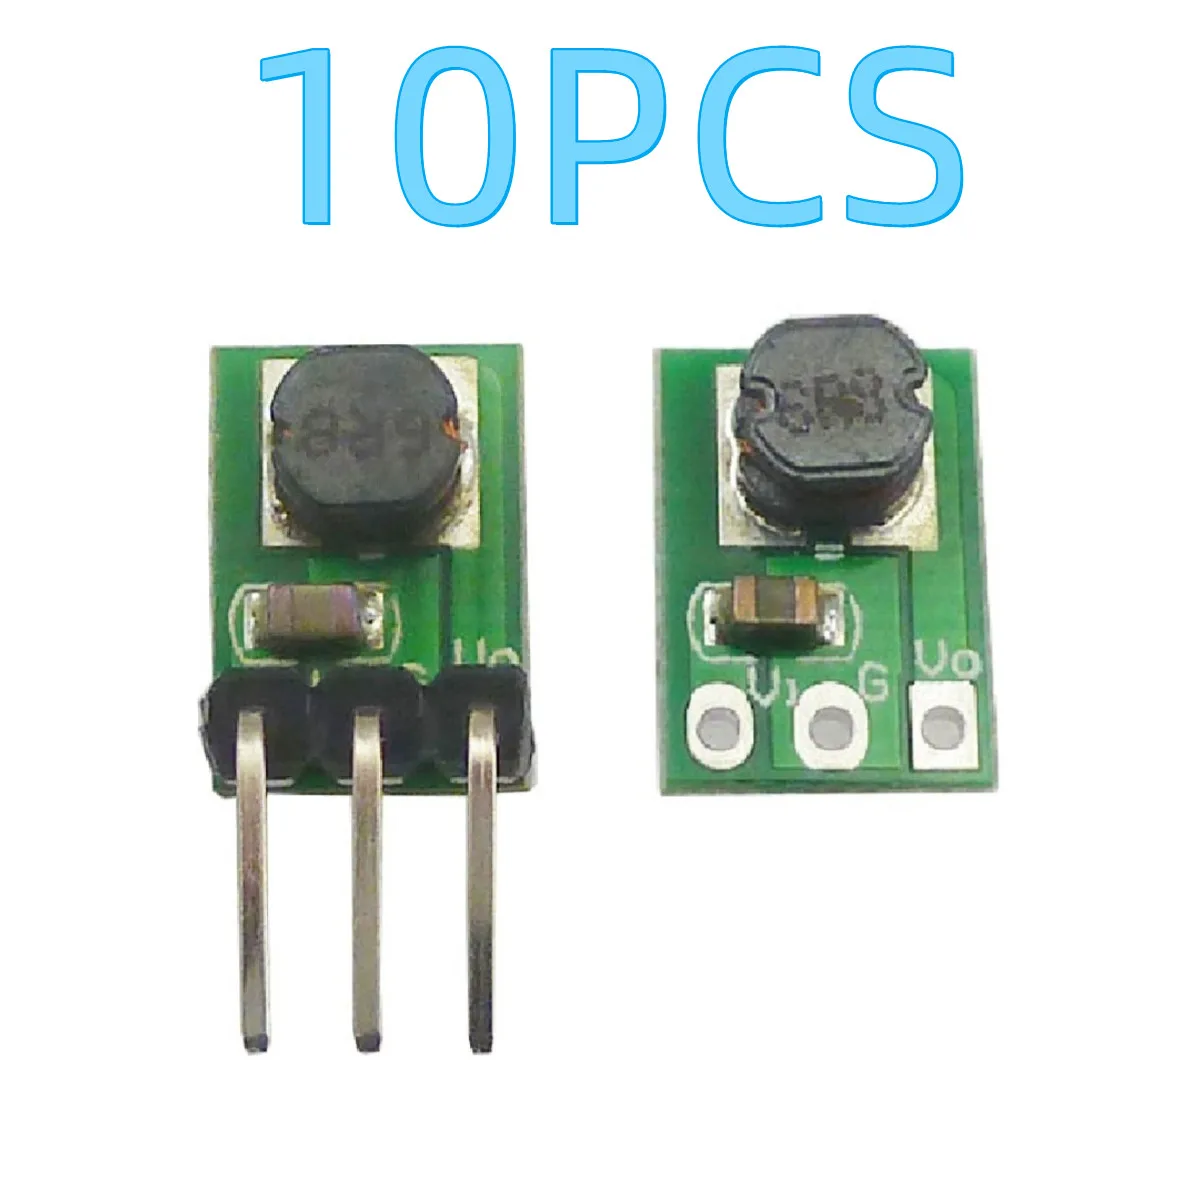 

10PCS DD0503M tiny Size DC DC Buck Converter 3.7V 3.85V 4.2V 4.5V 5V 6V to 3.3V Step Down Voltage Regulator Module